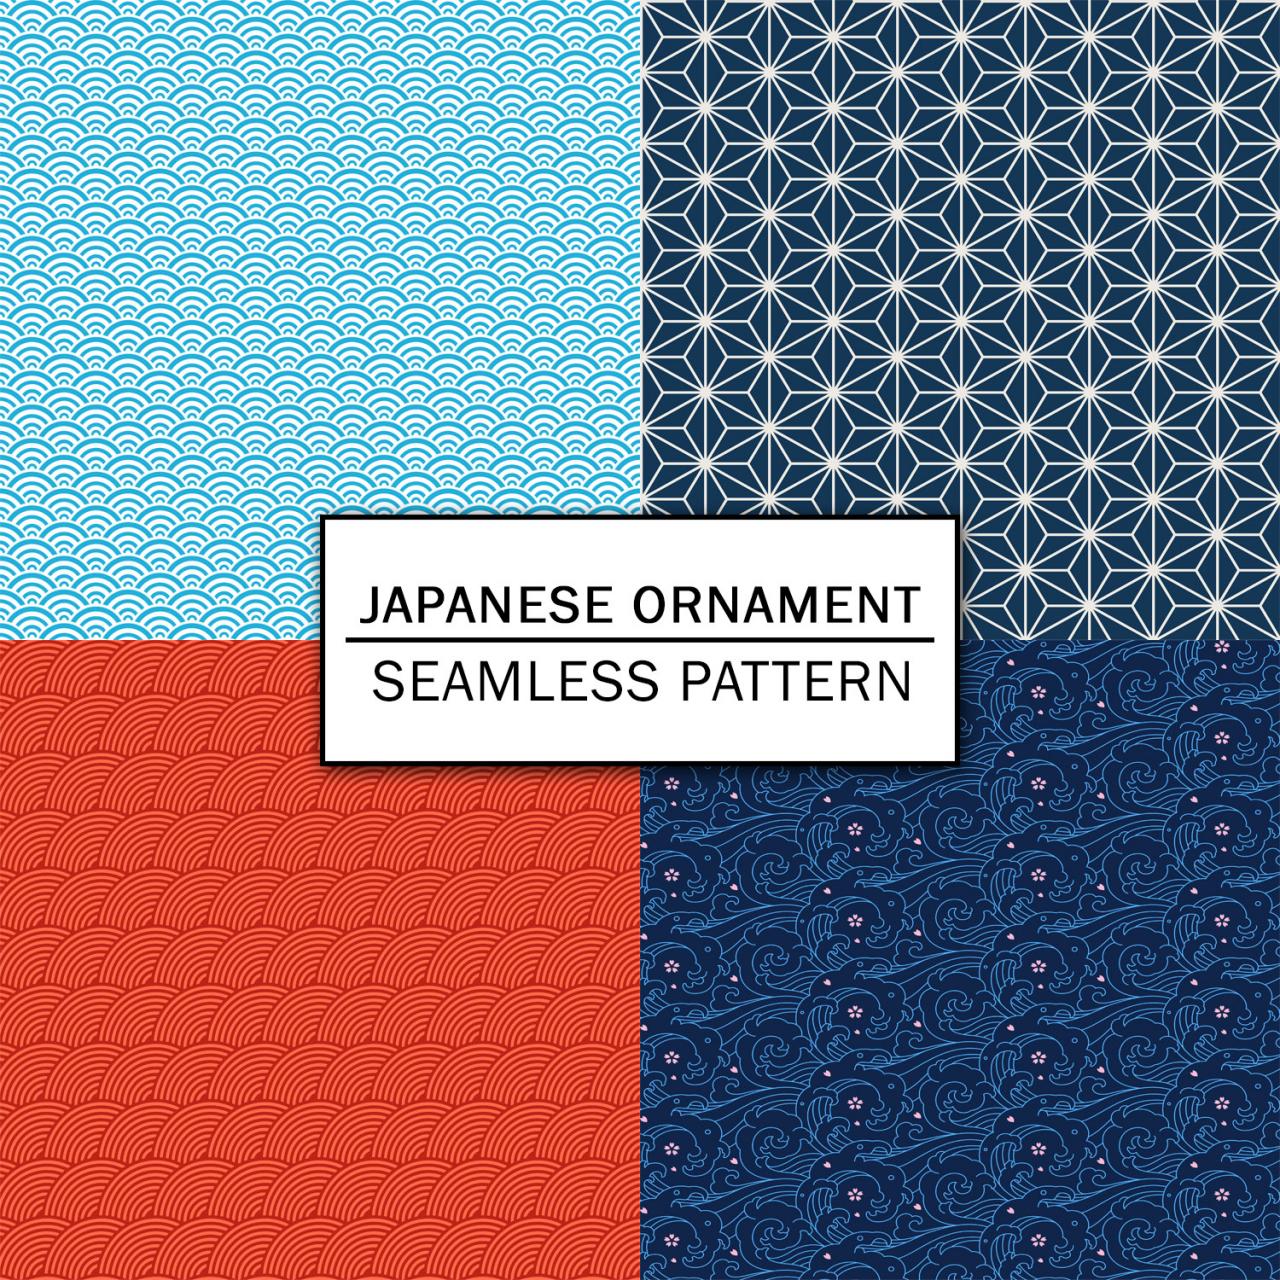 Japanese Ornament Digital Paper Spring Digital Paper Scrapbooking Paper Set Digital Paper Pack Digital Downloads